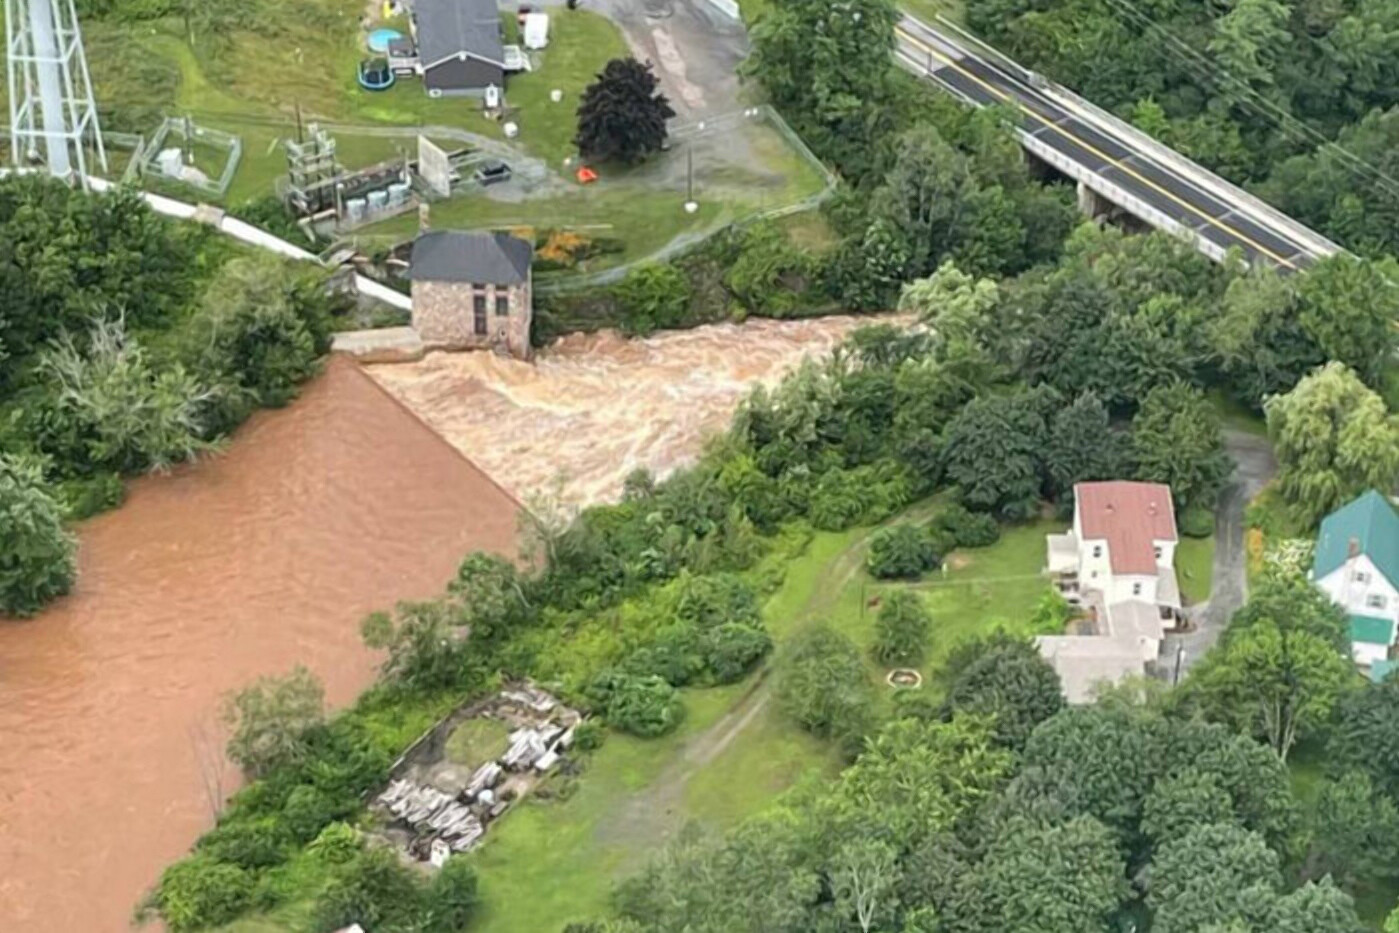  Канада страдает от масштабного наводнения: сотни людей эвакуированы, есть пропавшие без вести